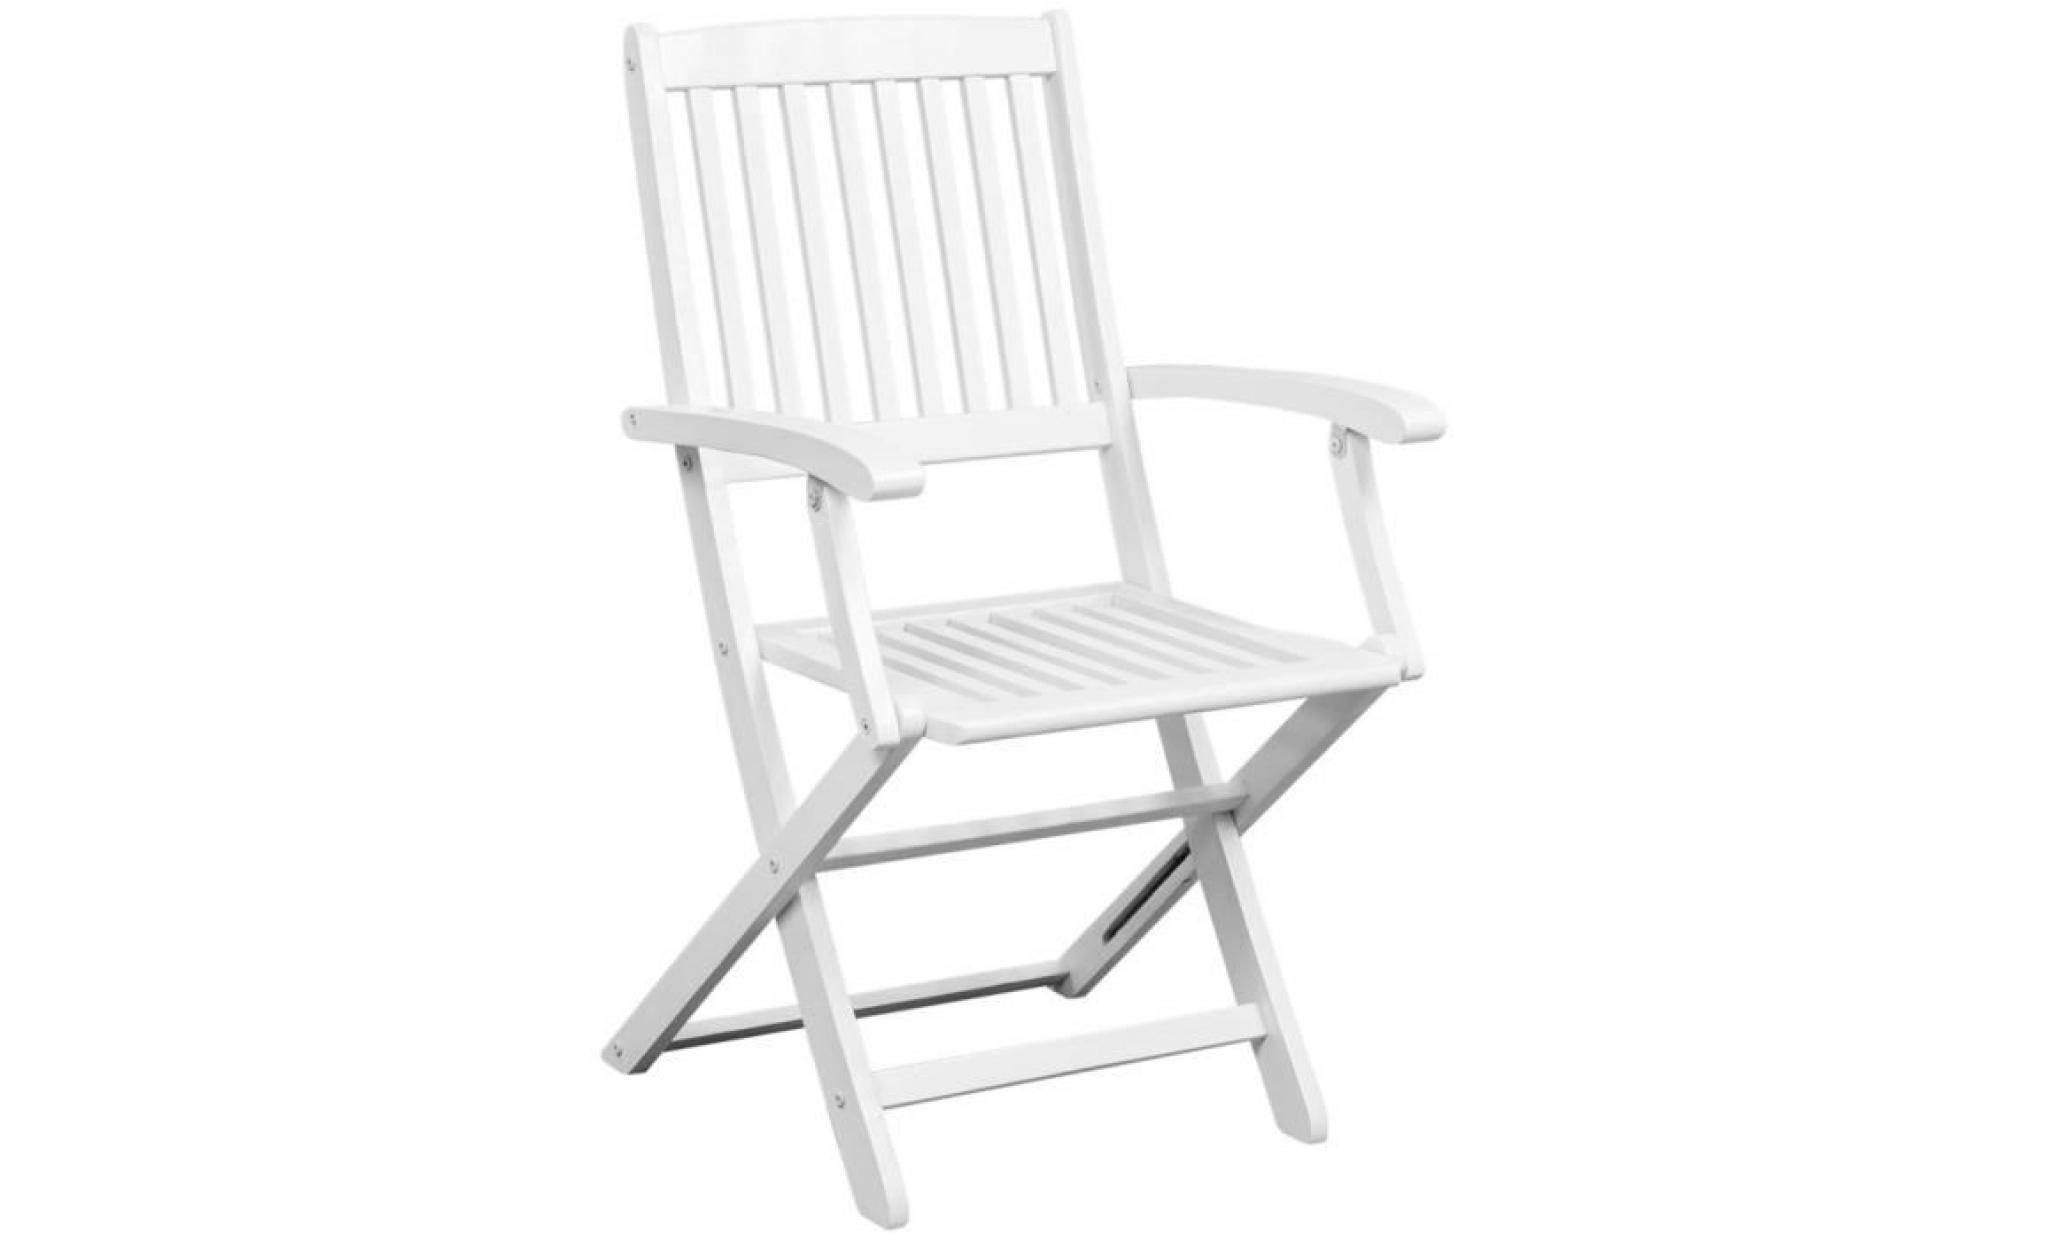 2pcs chaises pliantes en bois d'acacia blanc design élégant pour jardin terrasse ou patio 51 x 56 x 92 cm pas cher